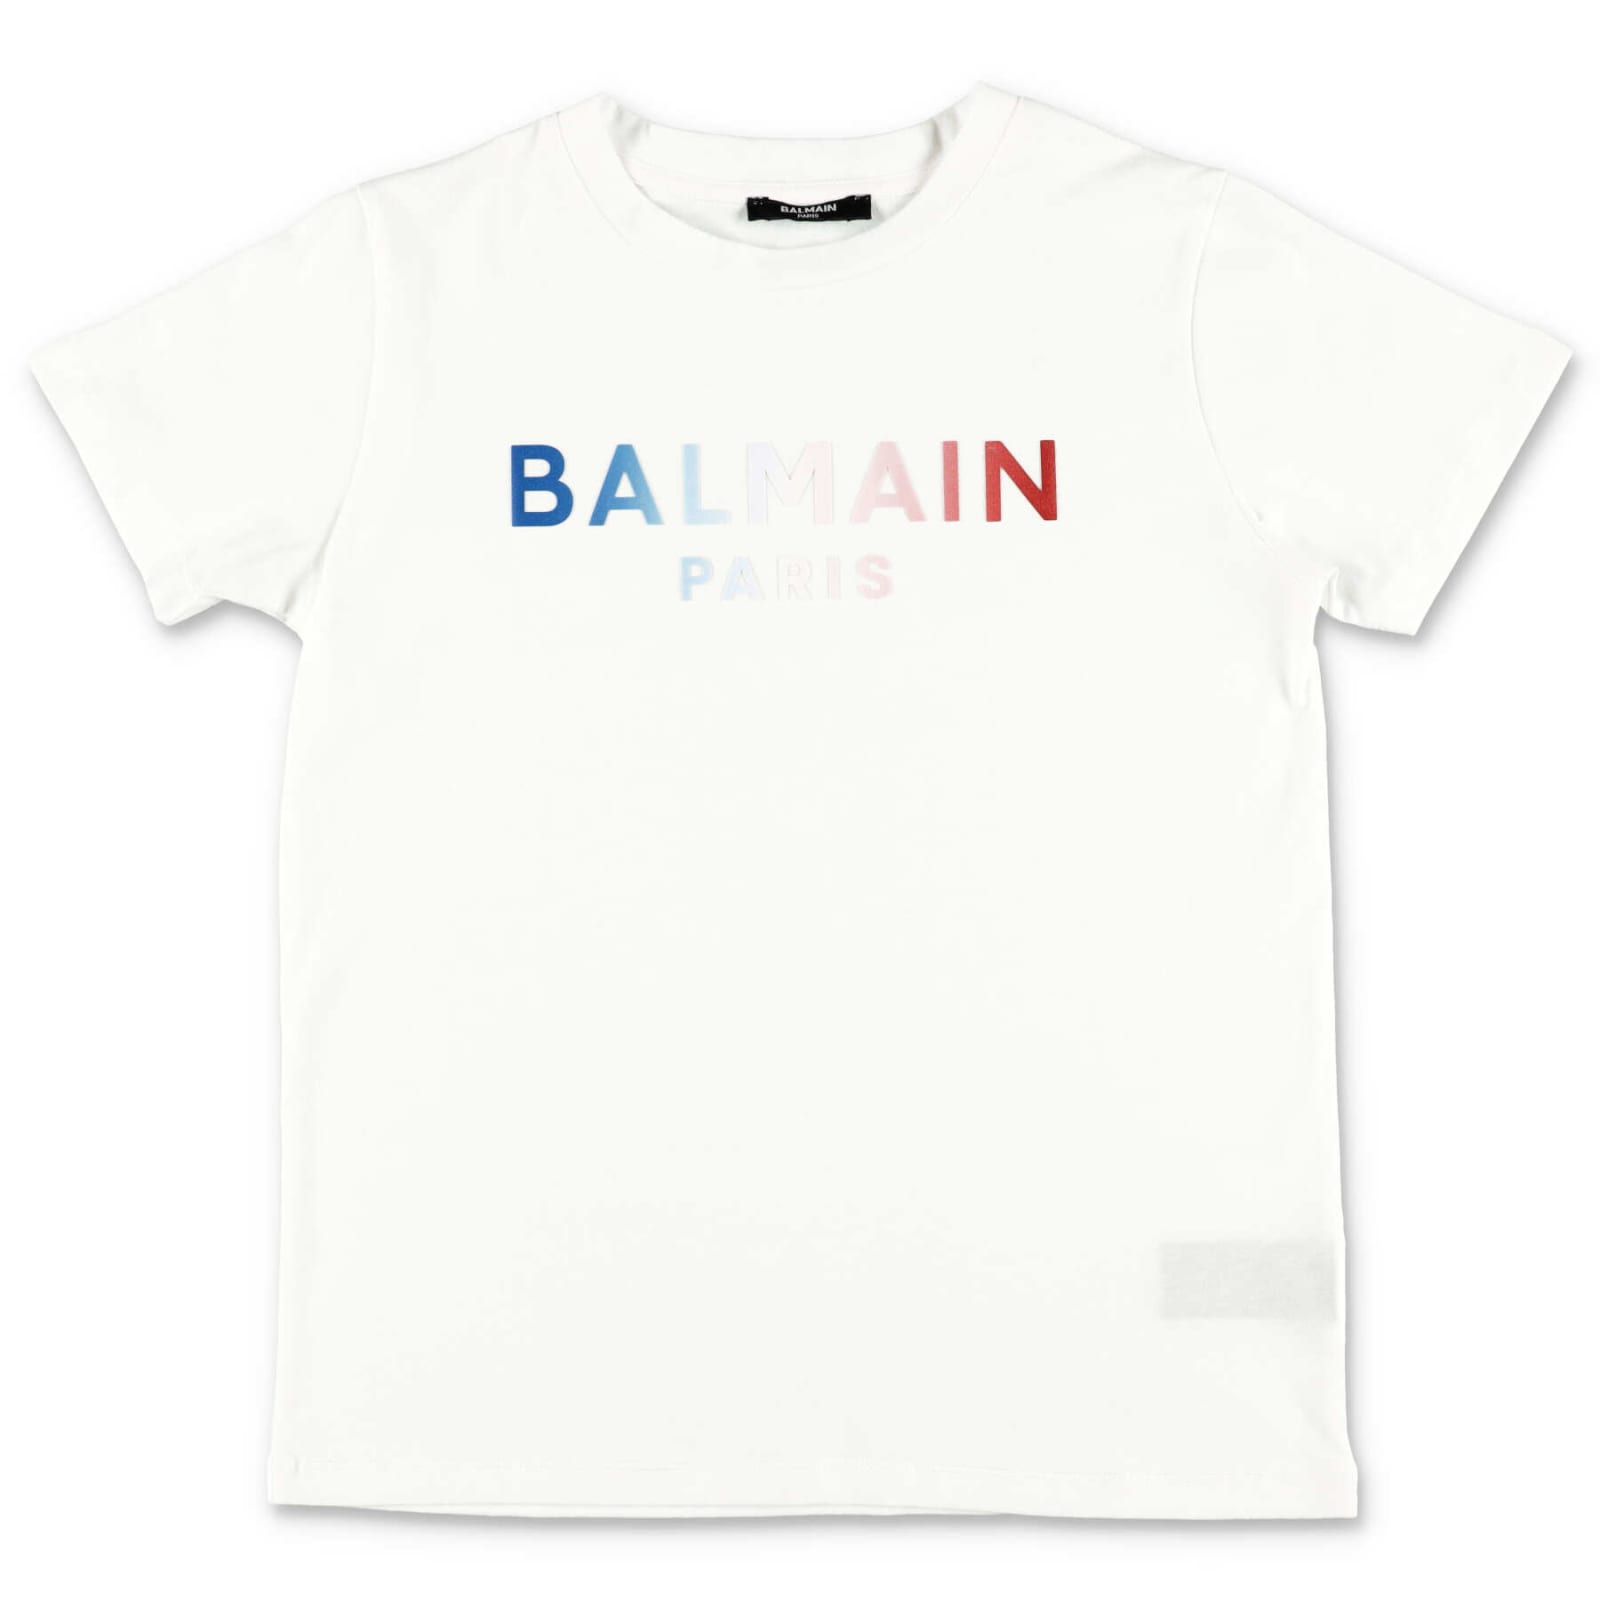 Balmain T-shirt Bianca In Jersey Di Cotone